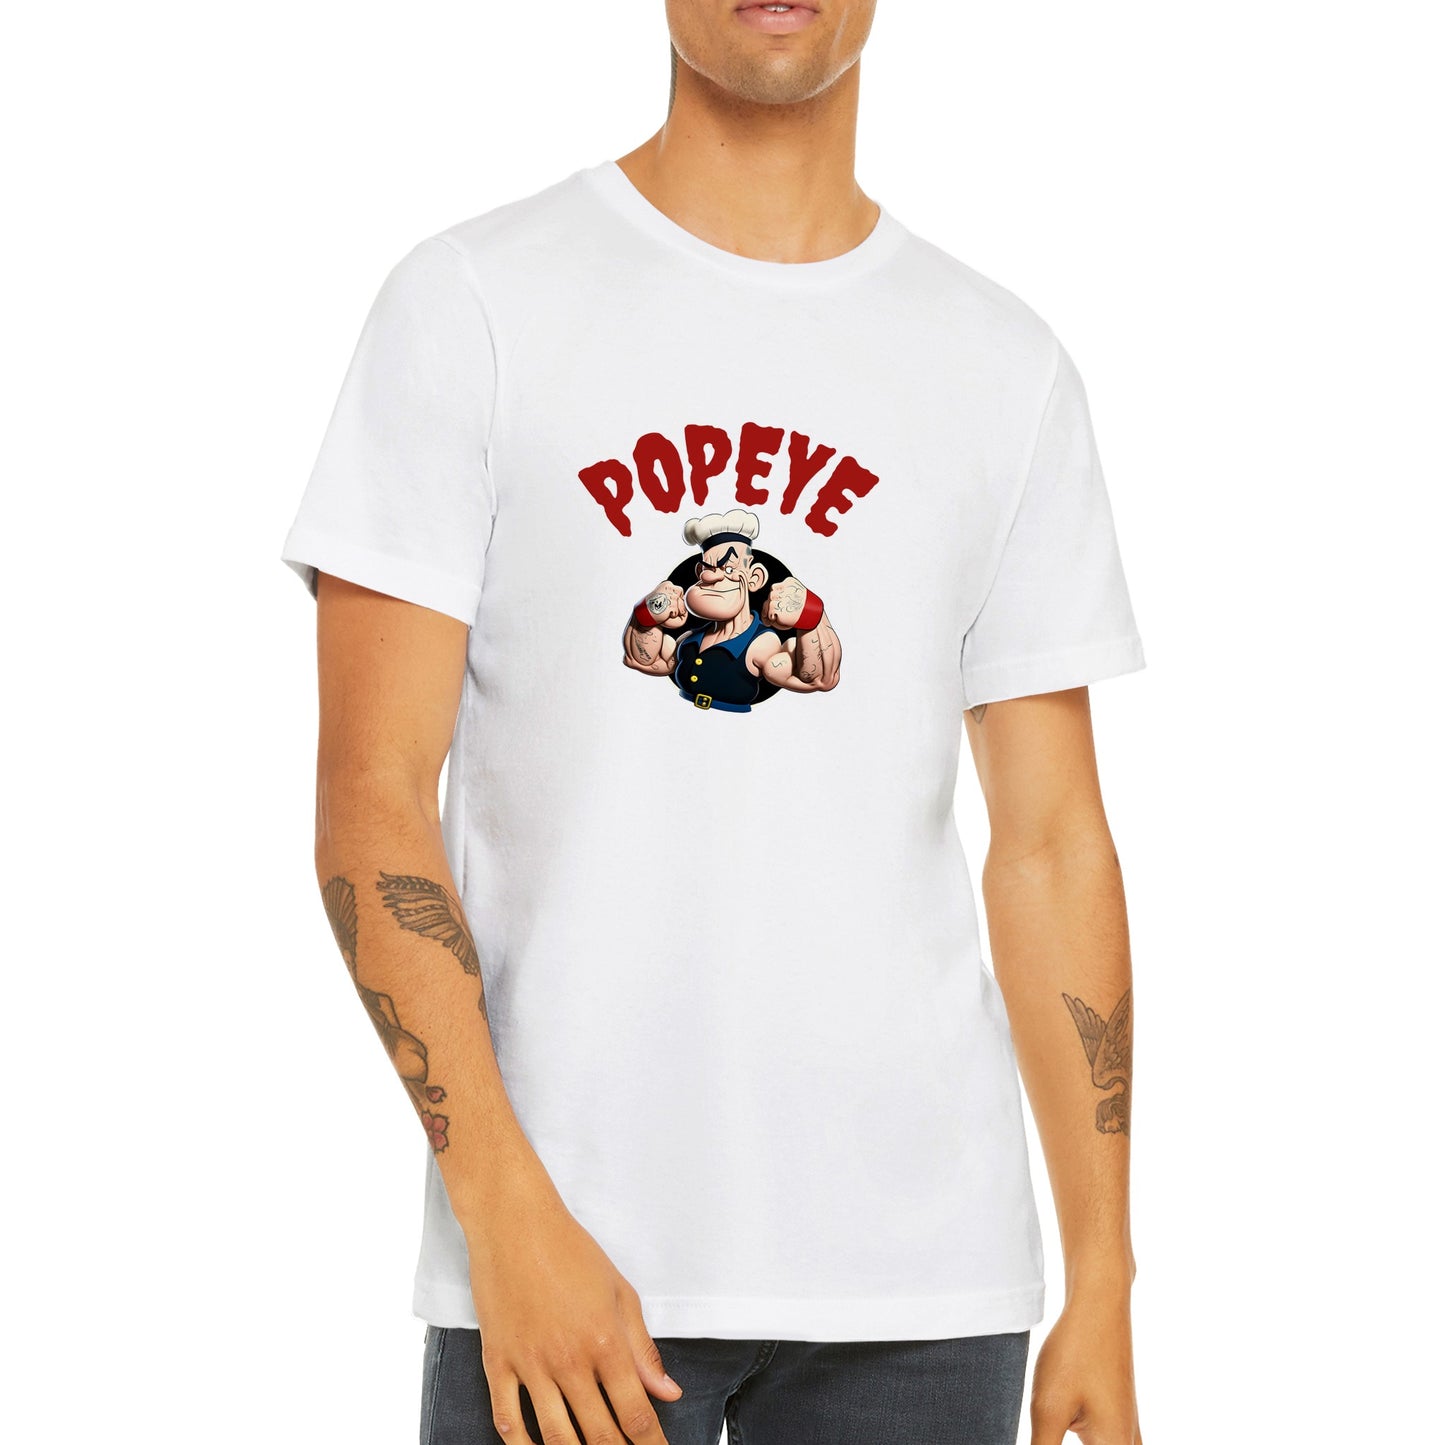 Popeye T-shirt - Popeye Muscle Artwork - Premium Unisex T-shirt